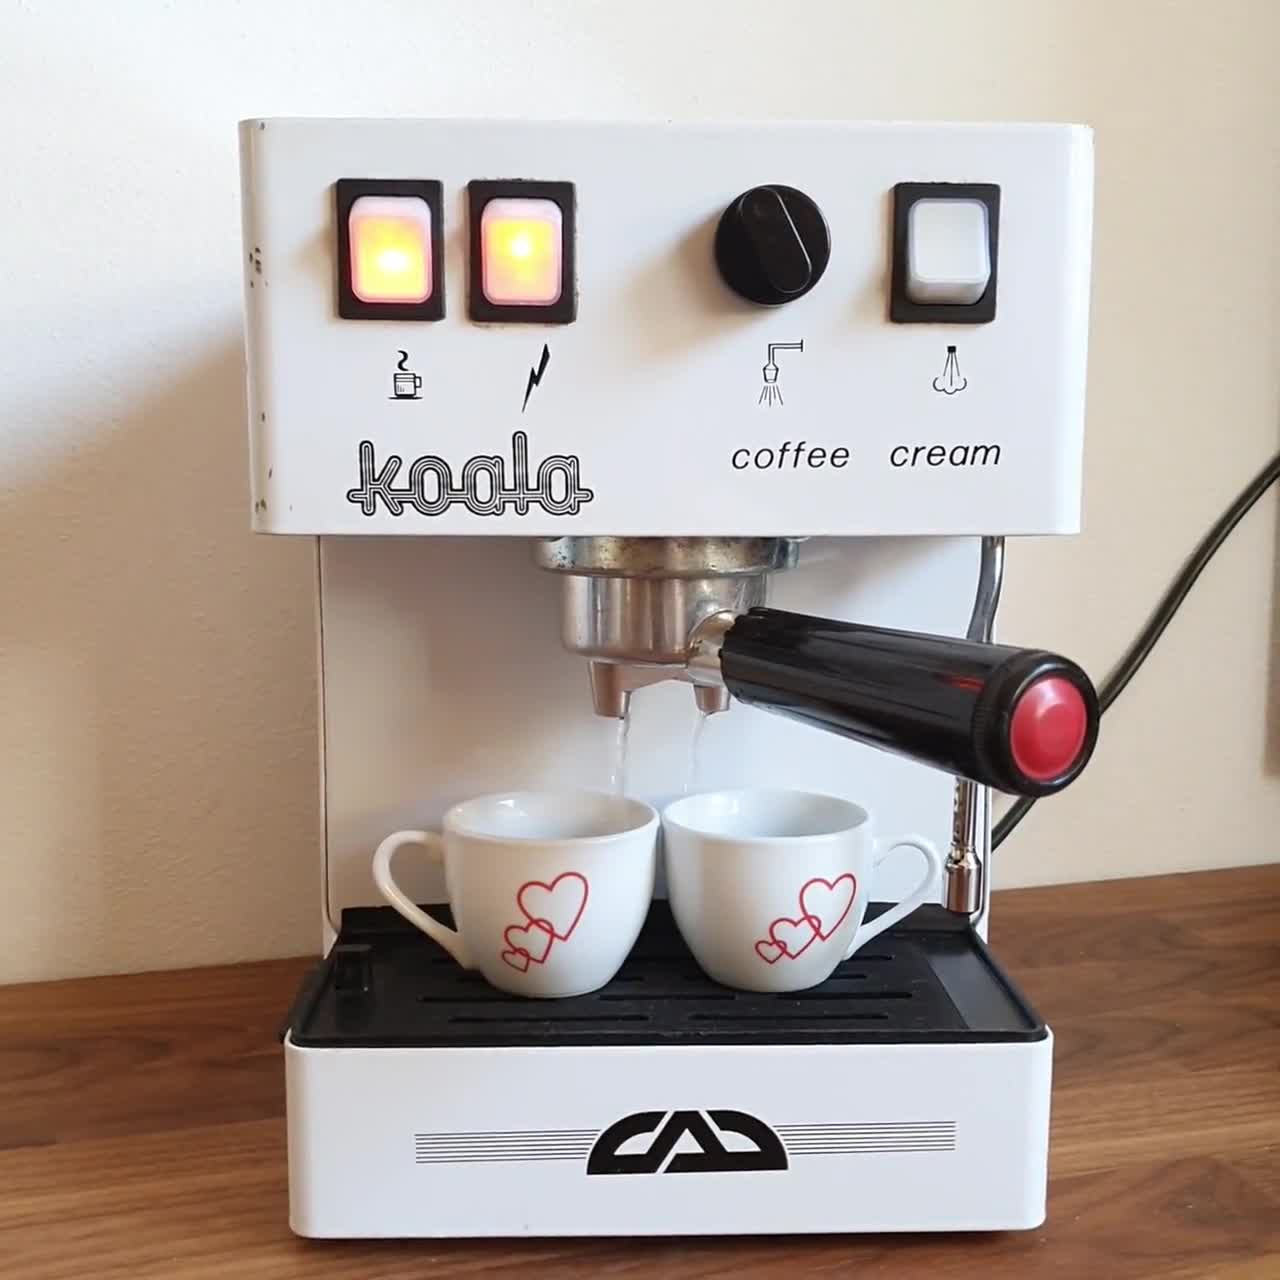 Smeg - Cafetera - Una colección de juegos y regalos para adultos - Máquina  de café con filtro - Crema : Hogar y Cocina 